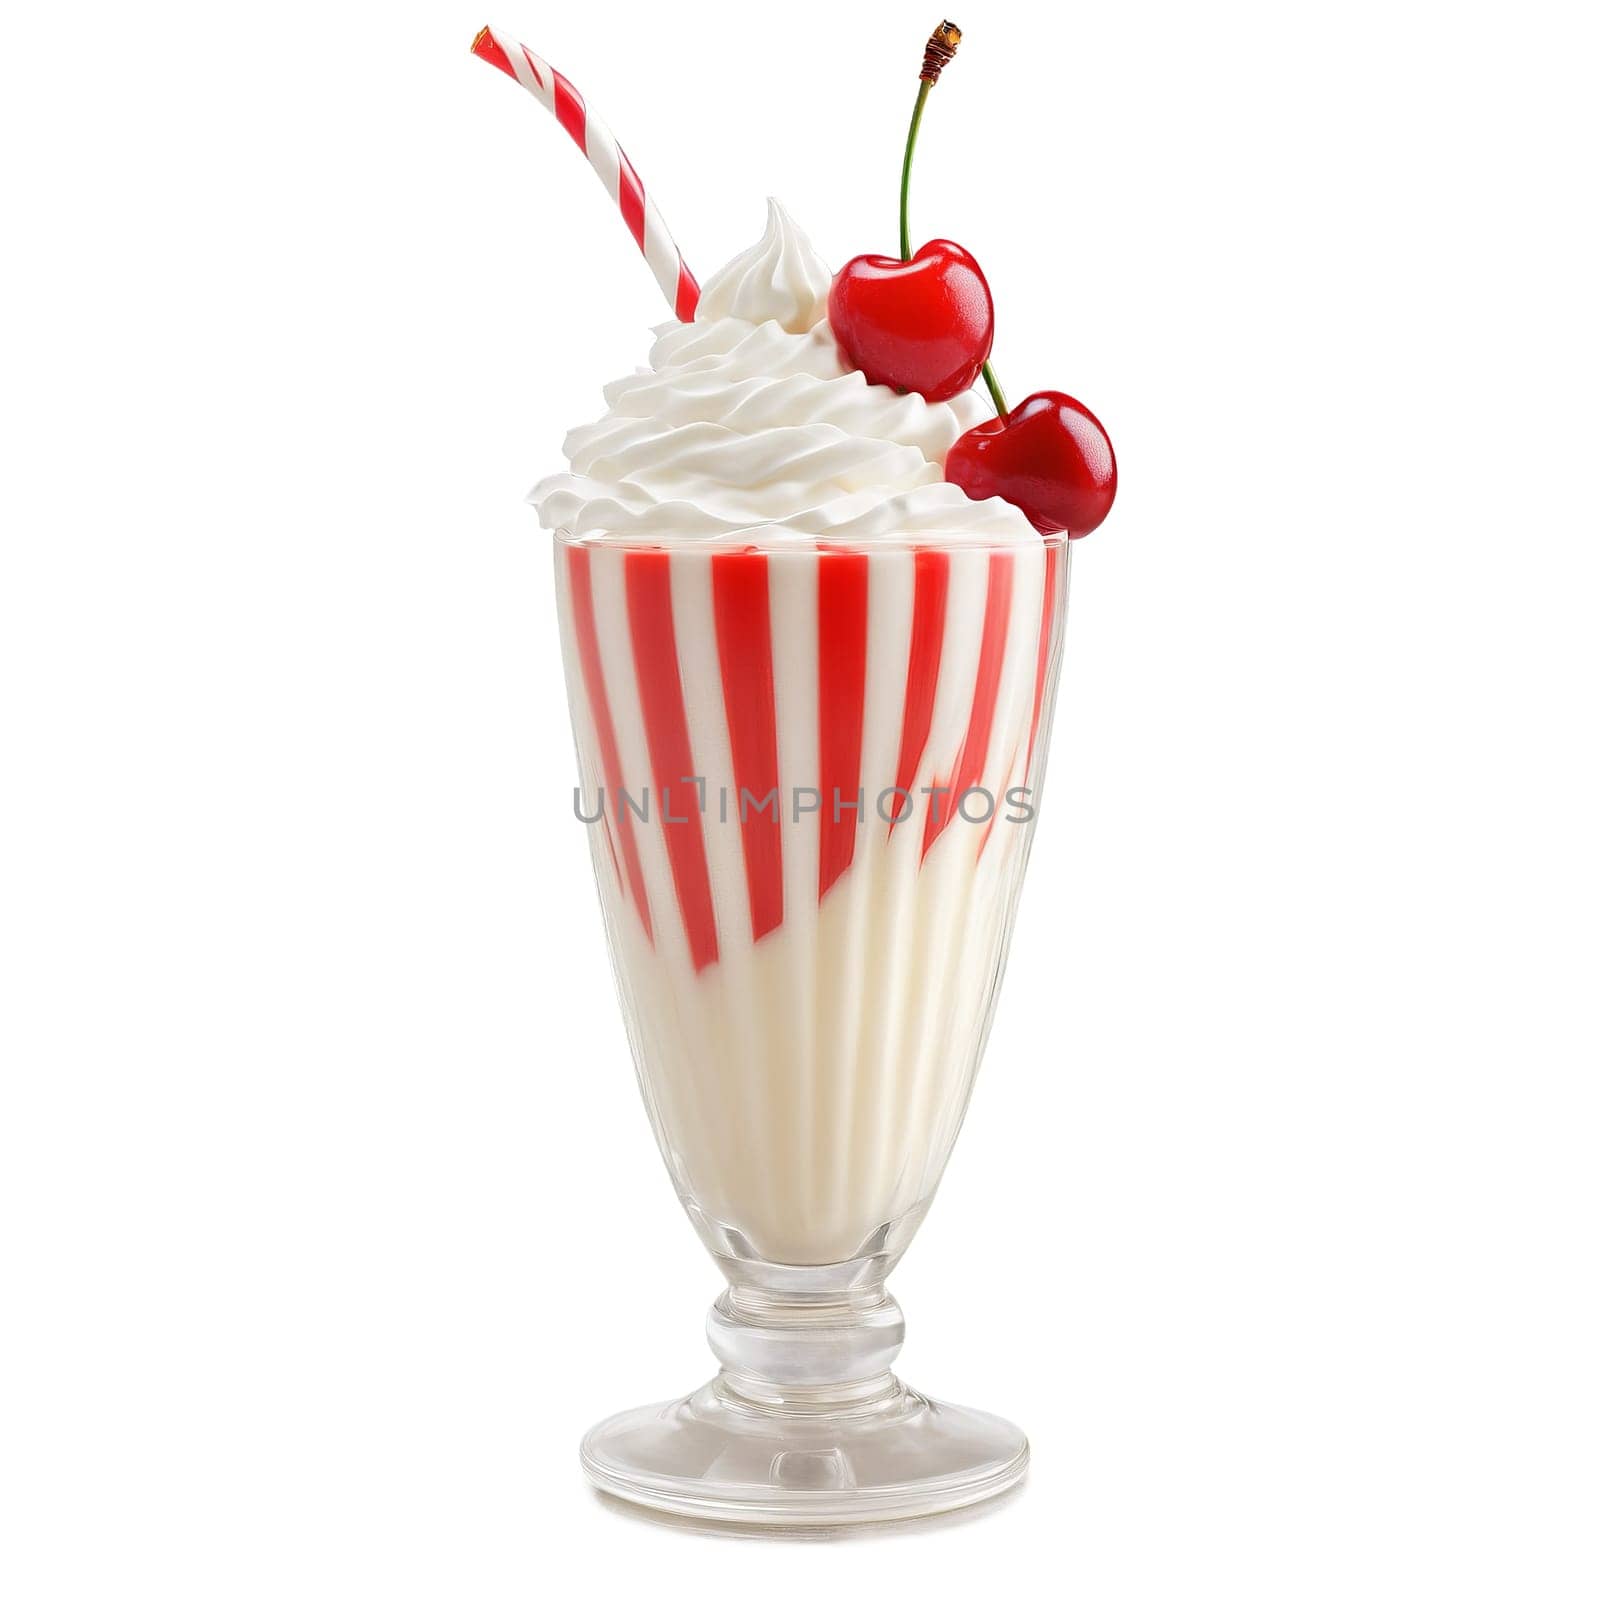 Vanilla Cream Swirl Milkshake whipped cream topping maraschino cherry striped straw isolated on transparent Summer by panophotograph